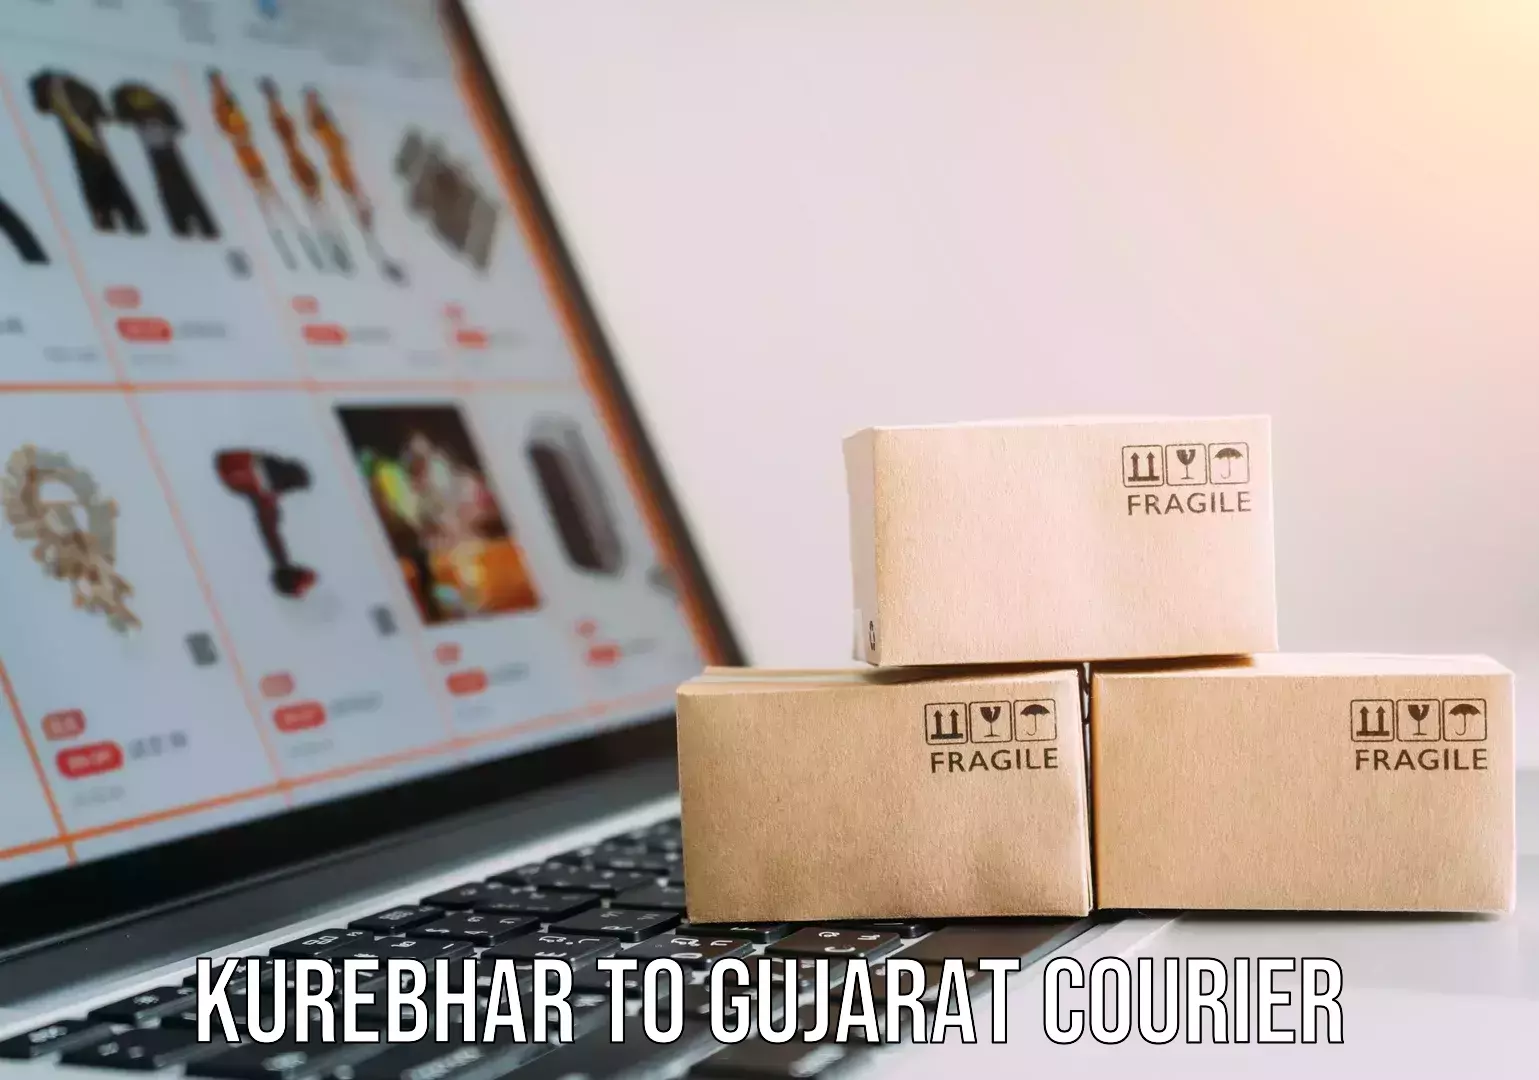 Furniture transport experts Kurebhar to Gujarat